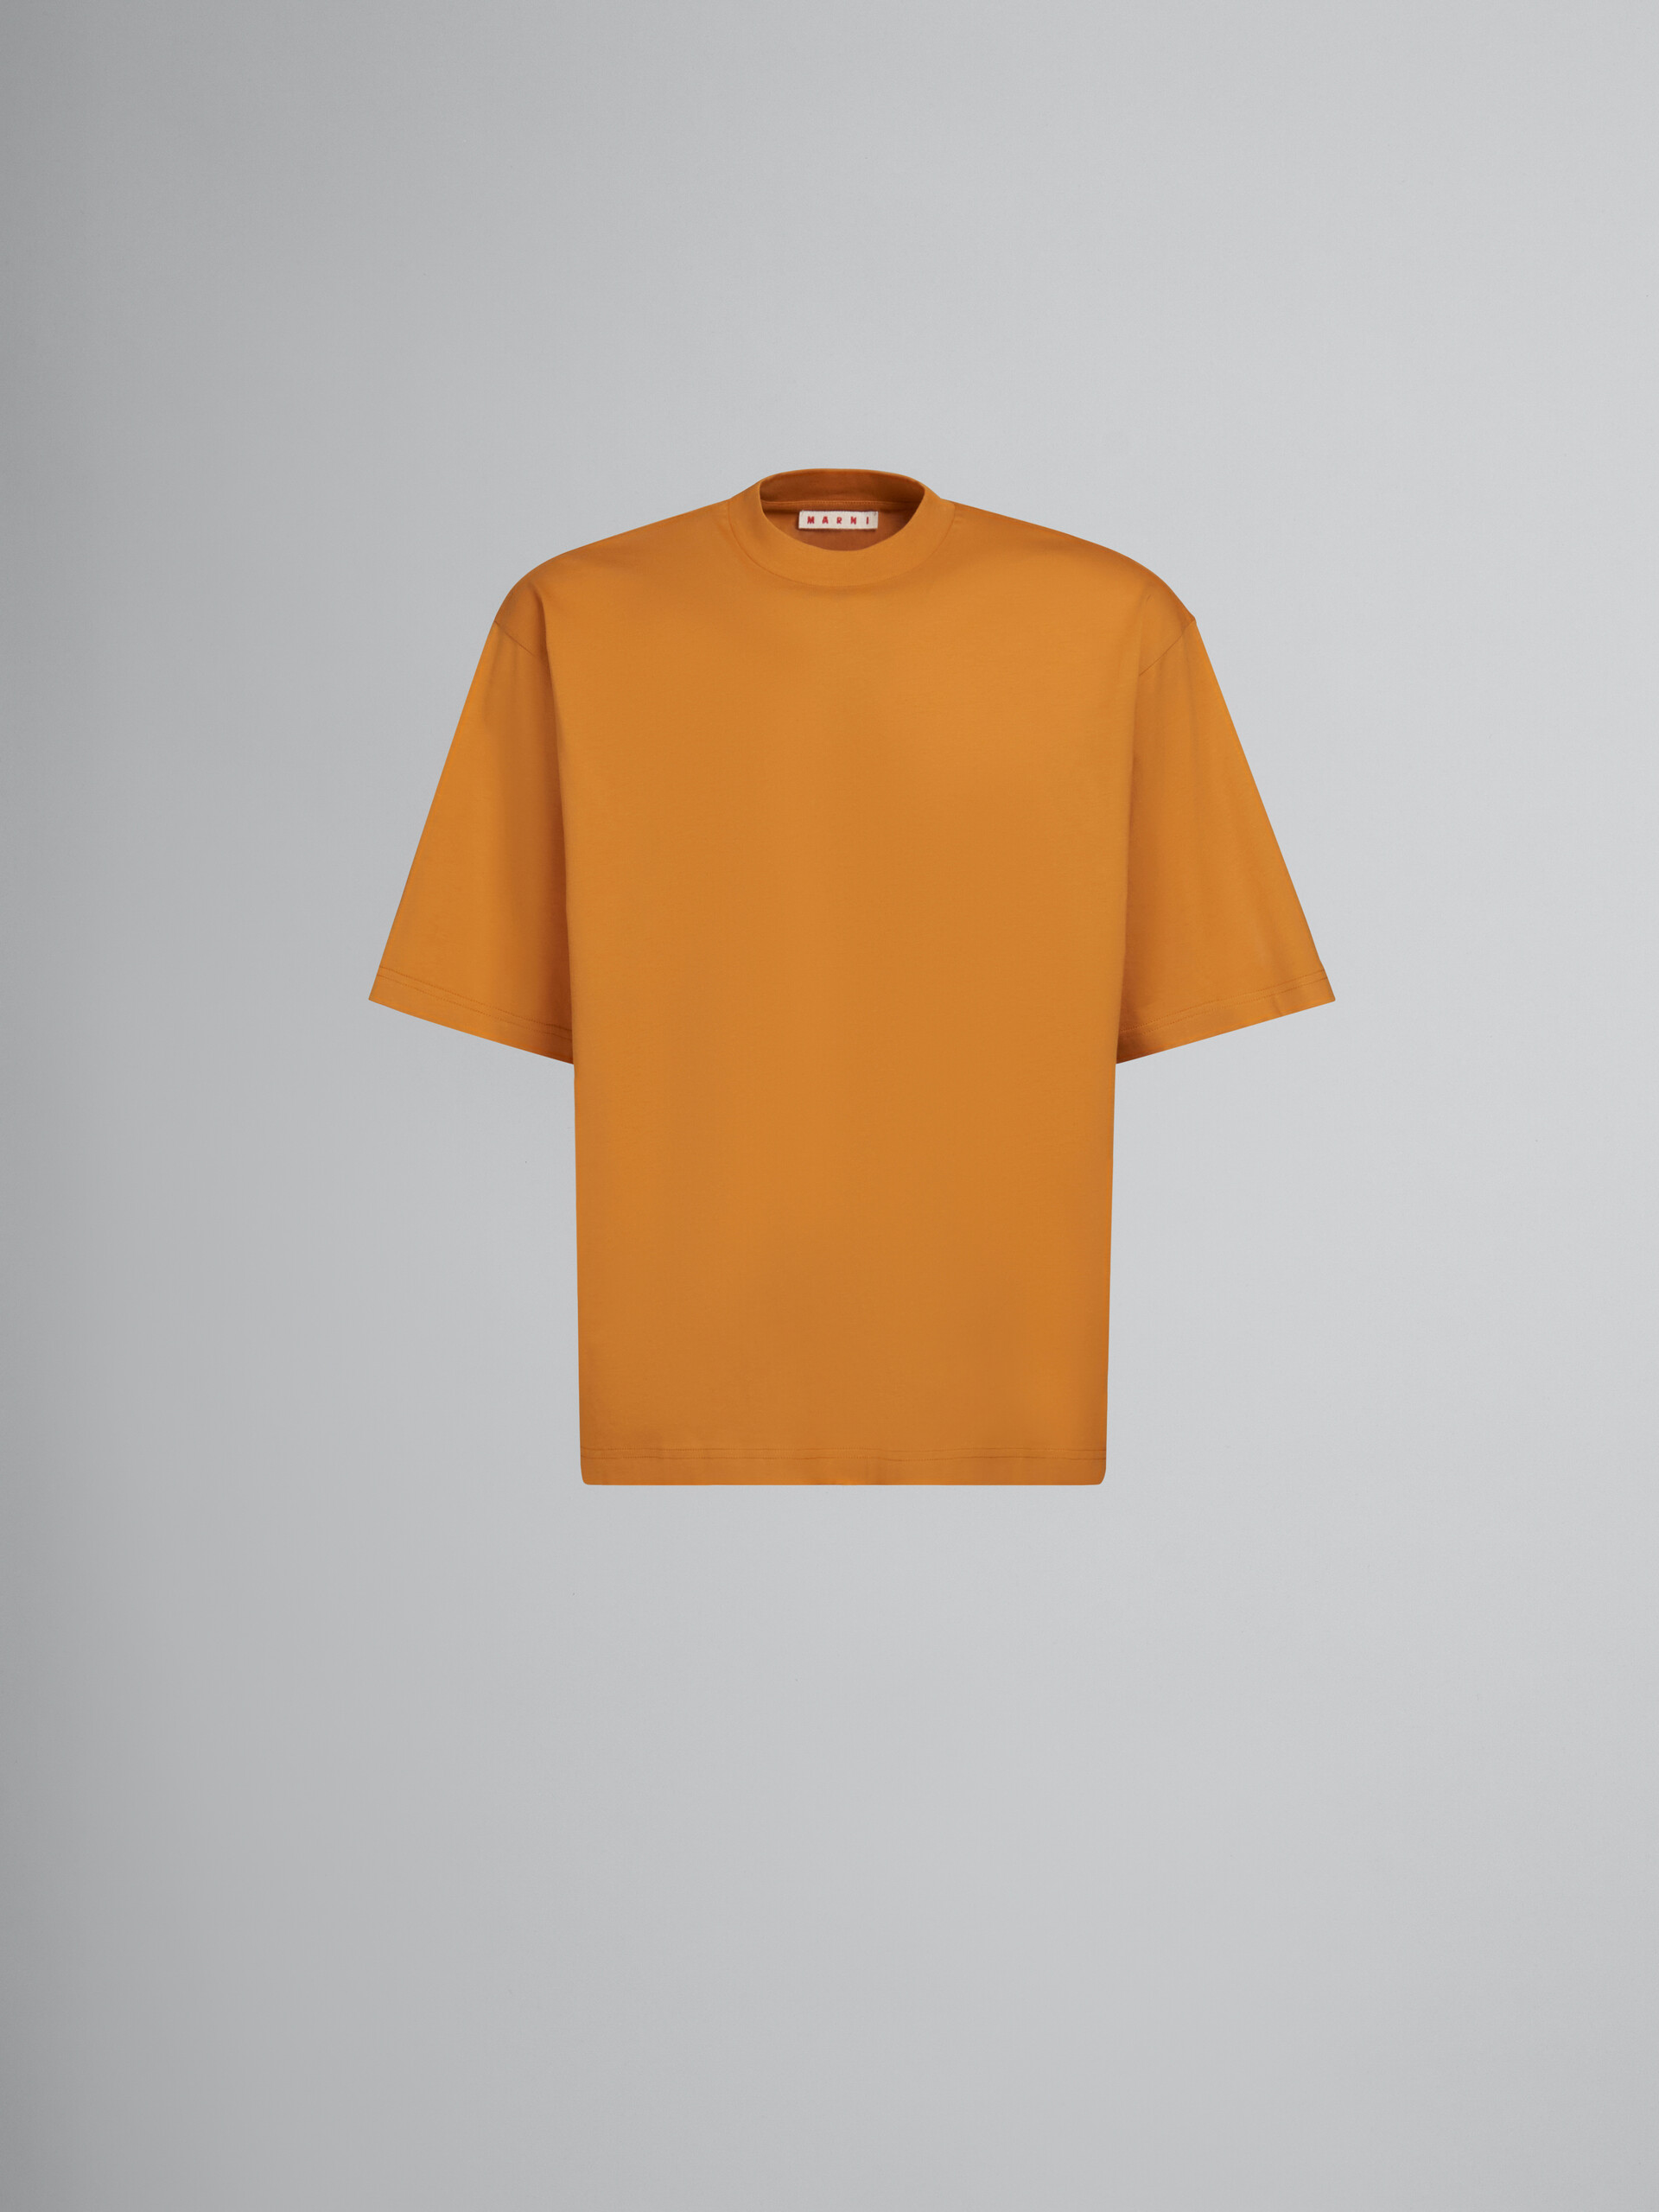 オーガニックコットン製Tシャツ3枚セット - Tシャツ - Image 1